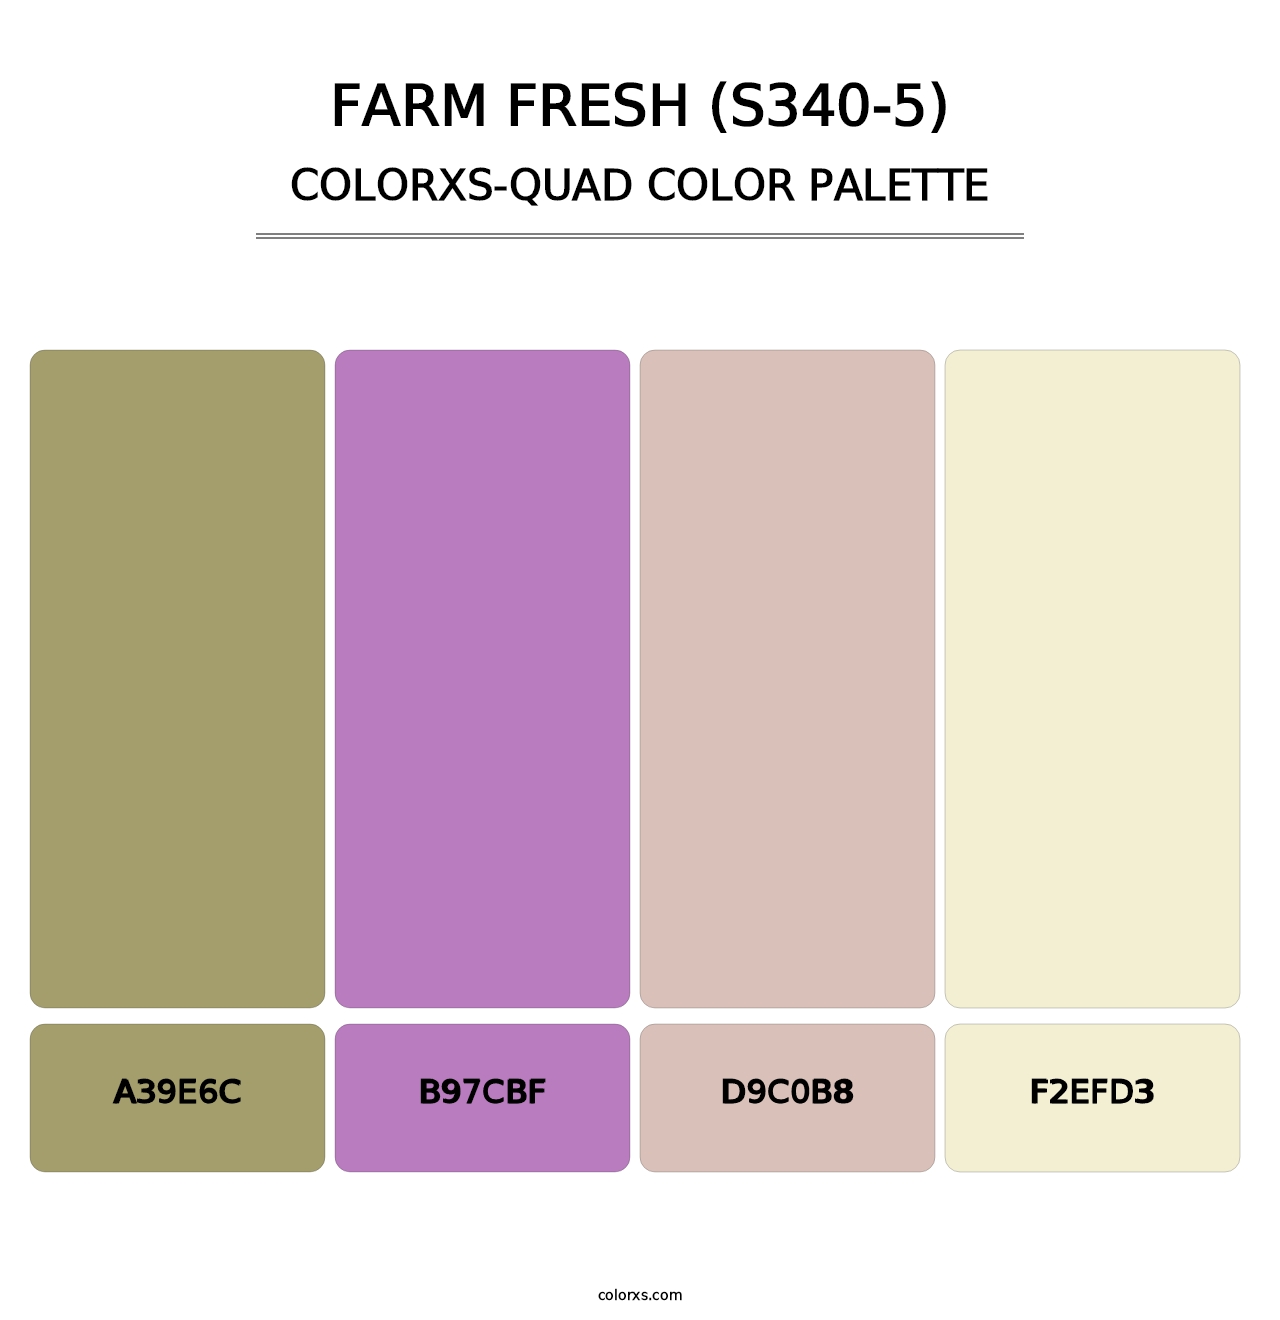 Farm Fresh (S340-5) - Colorxs Quad Palette